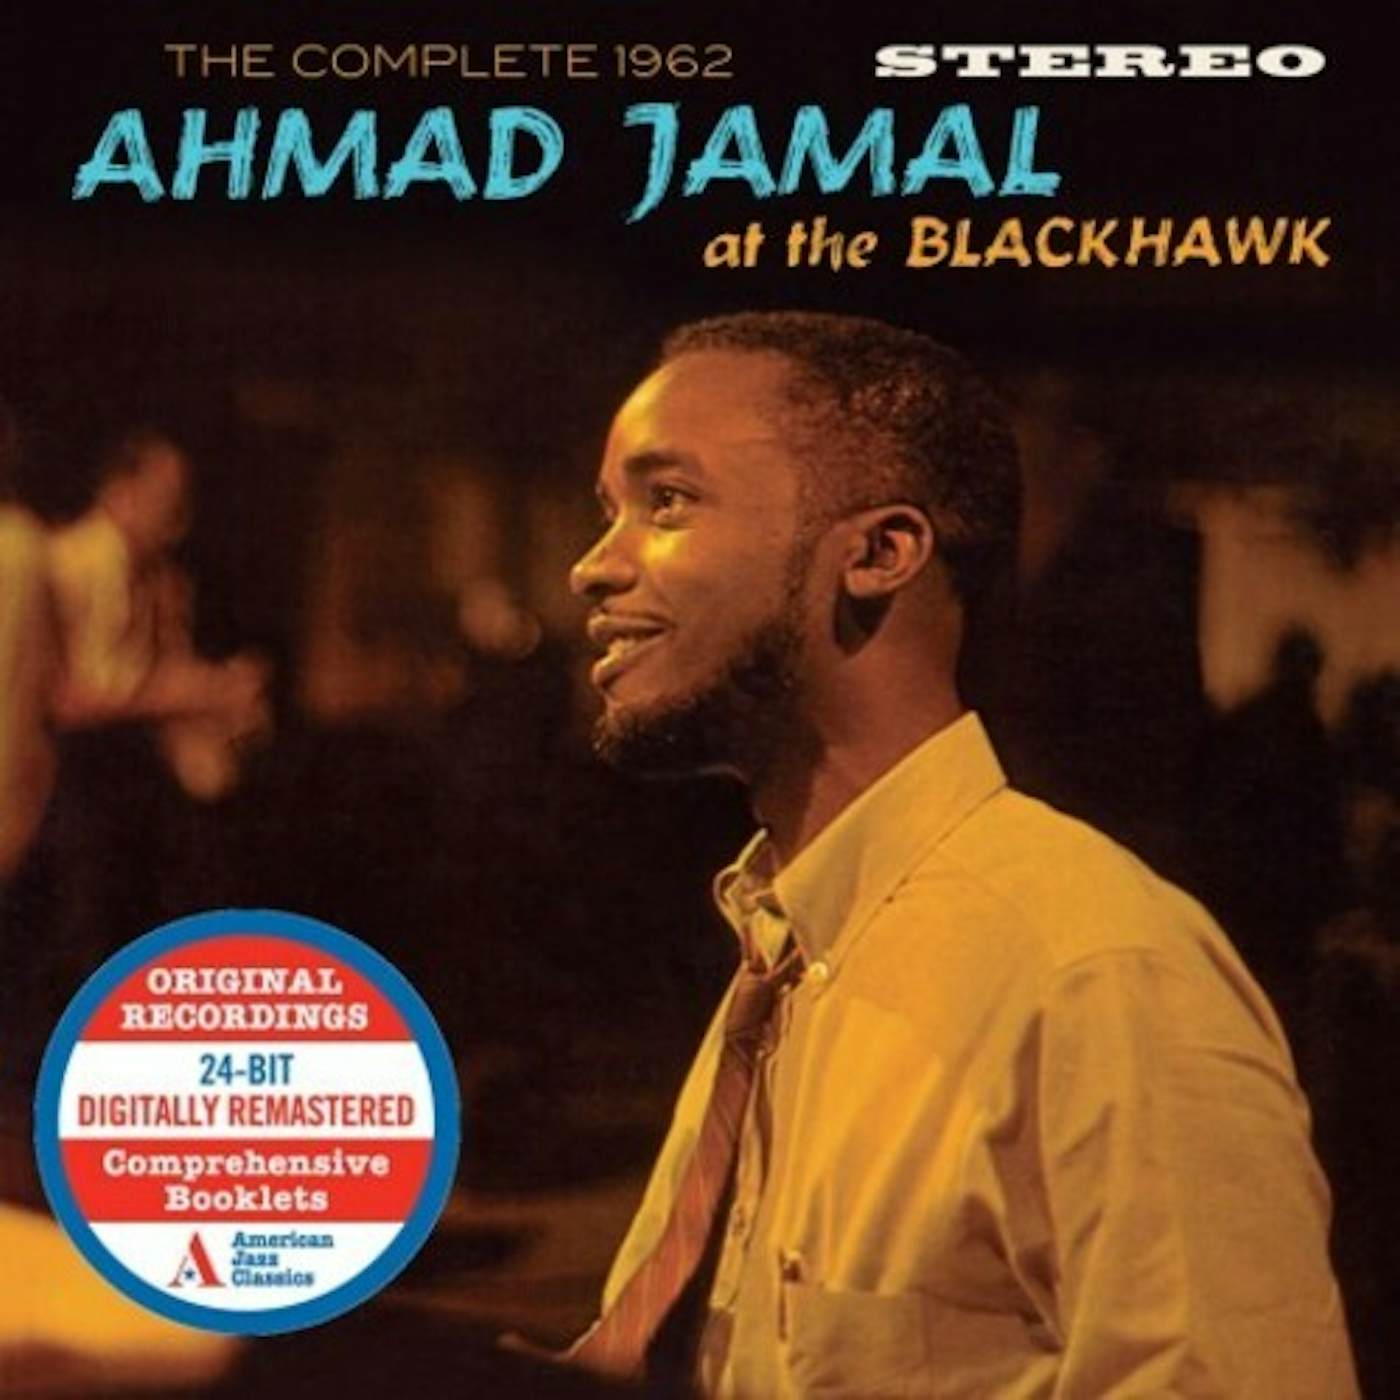 Ahmad Jamal COMPLETE 1962 AT THE BLACKHAWK CD